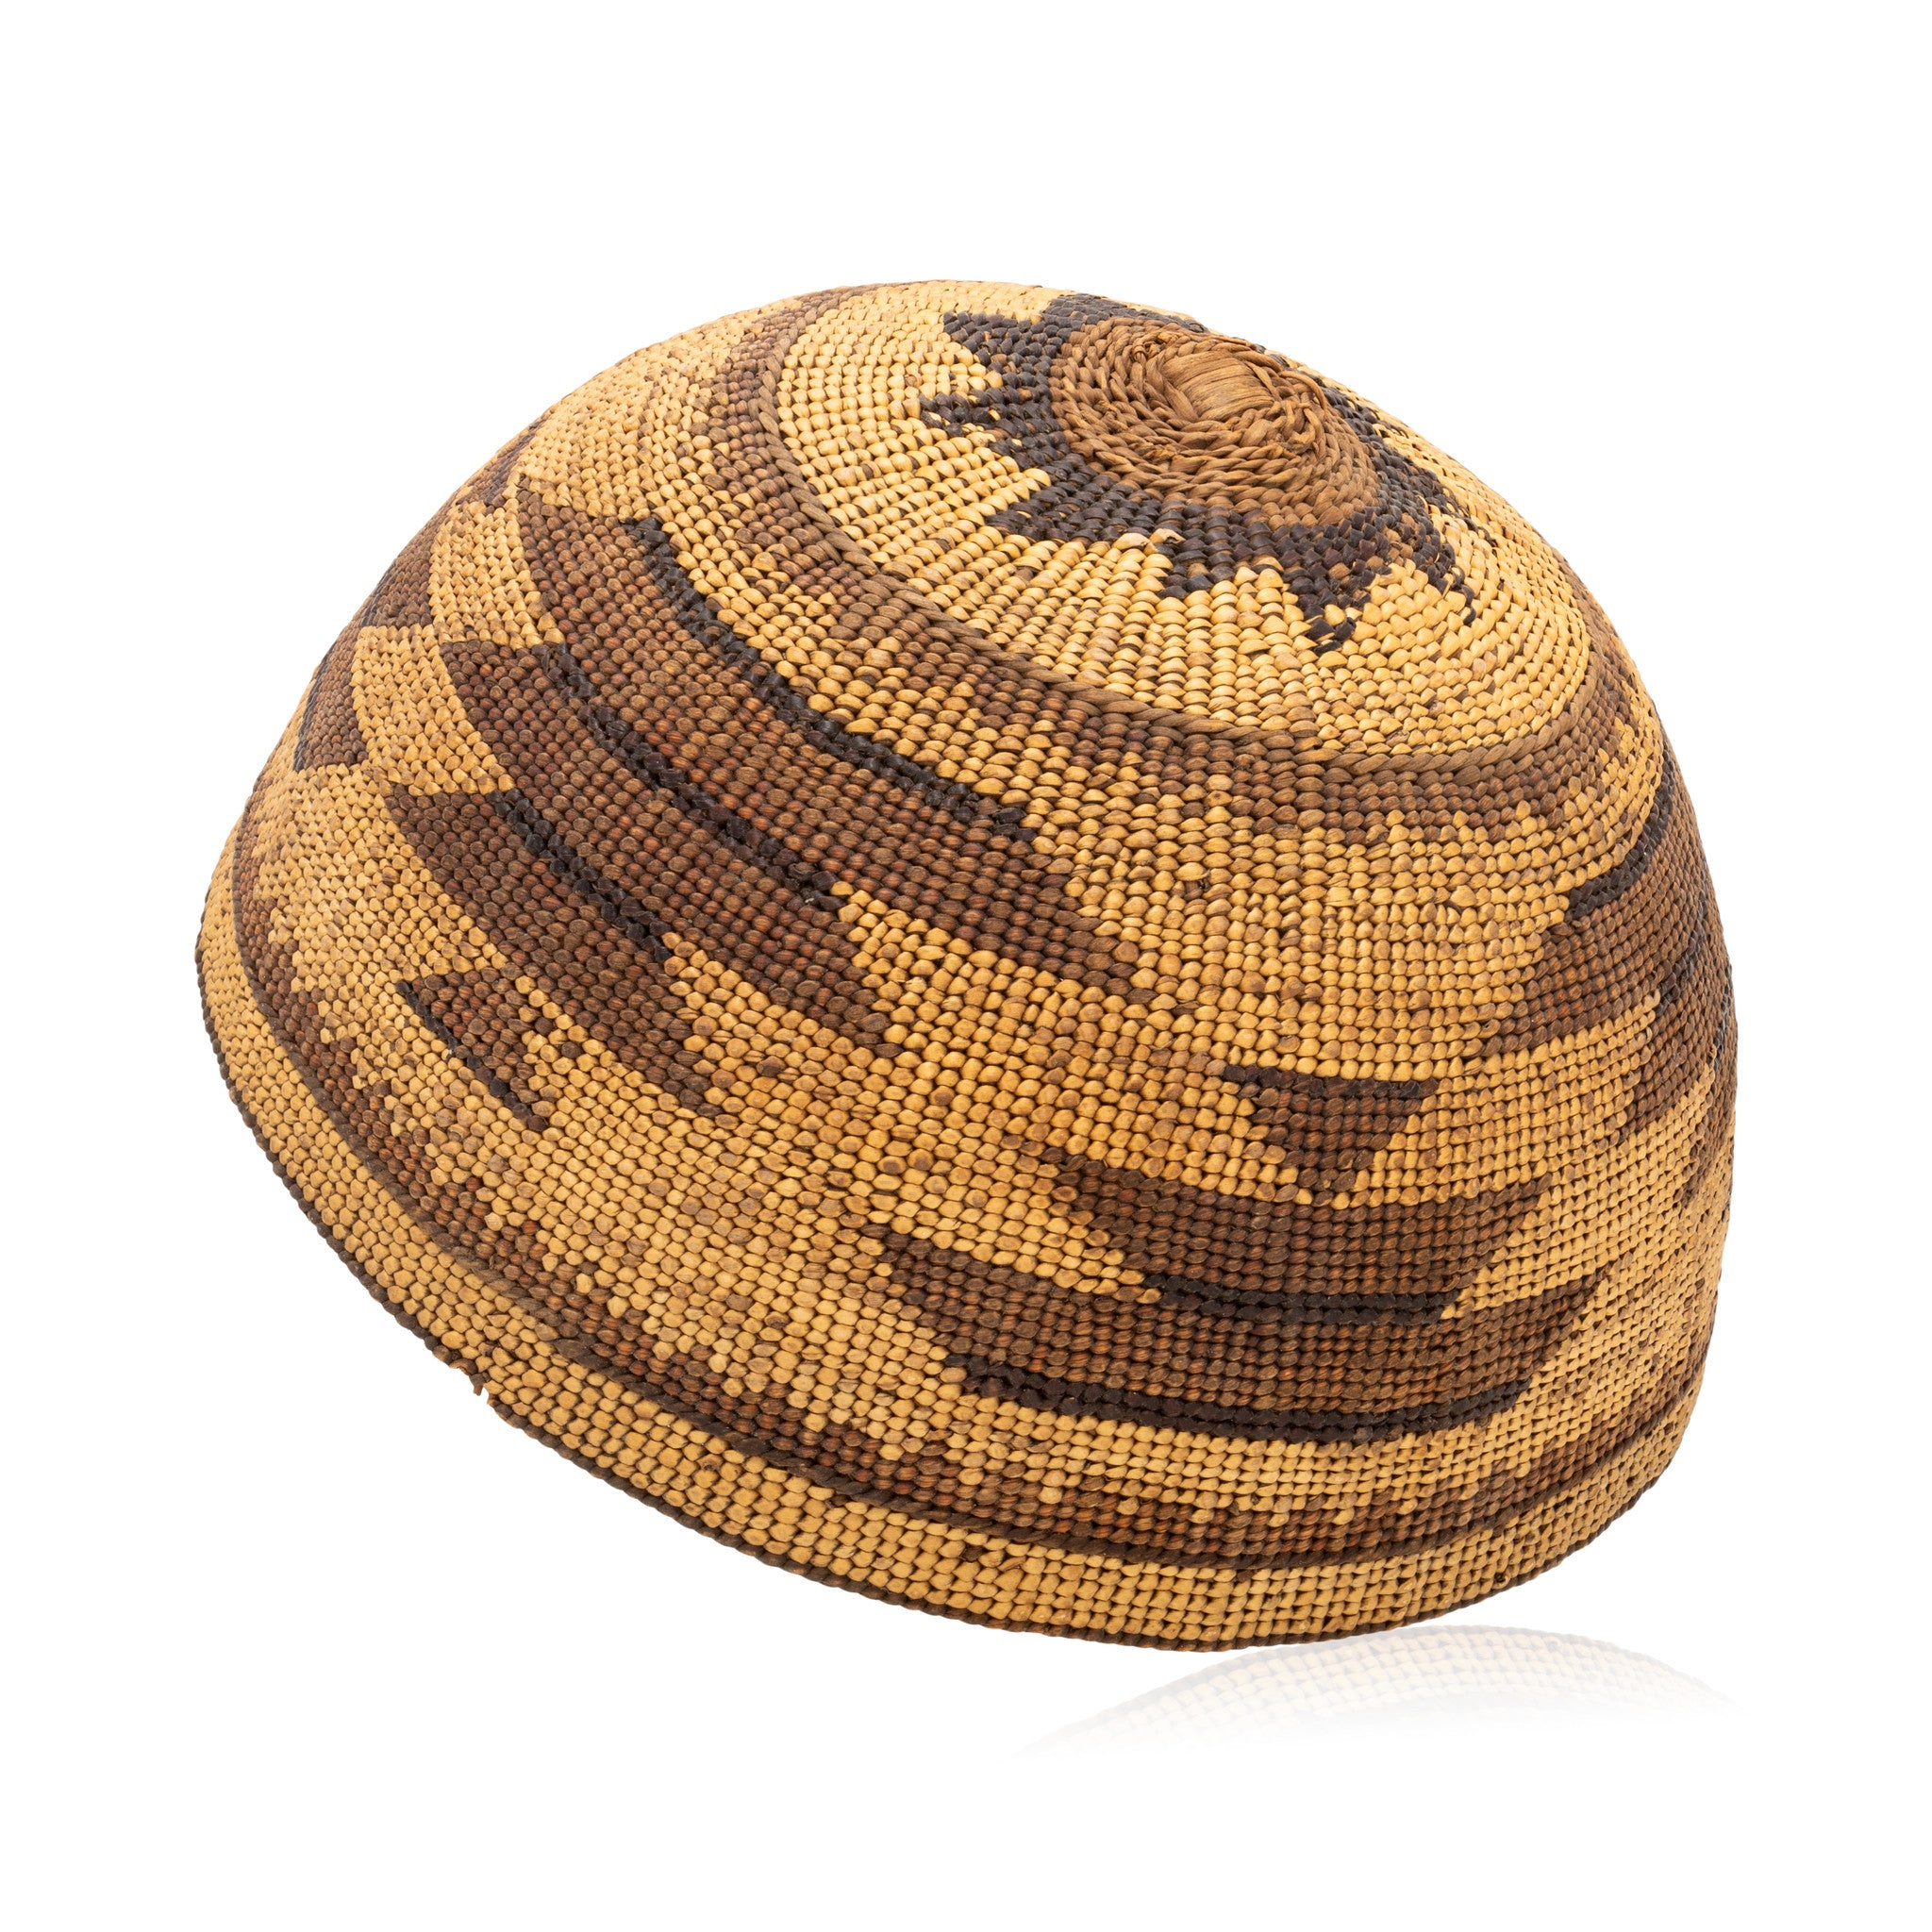 Hupa/Yurok Hat Basket